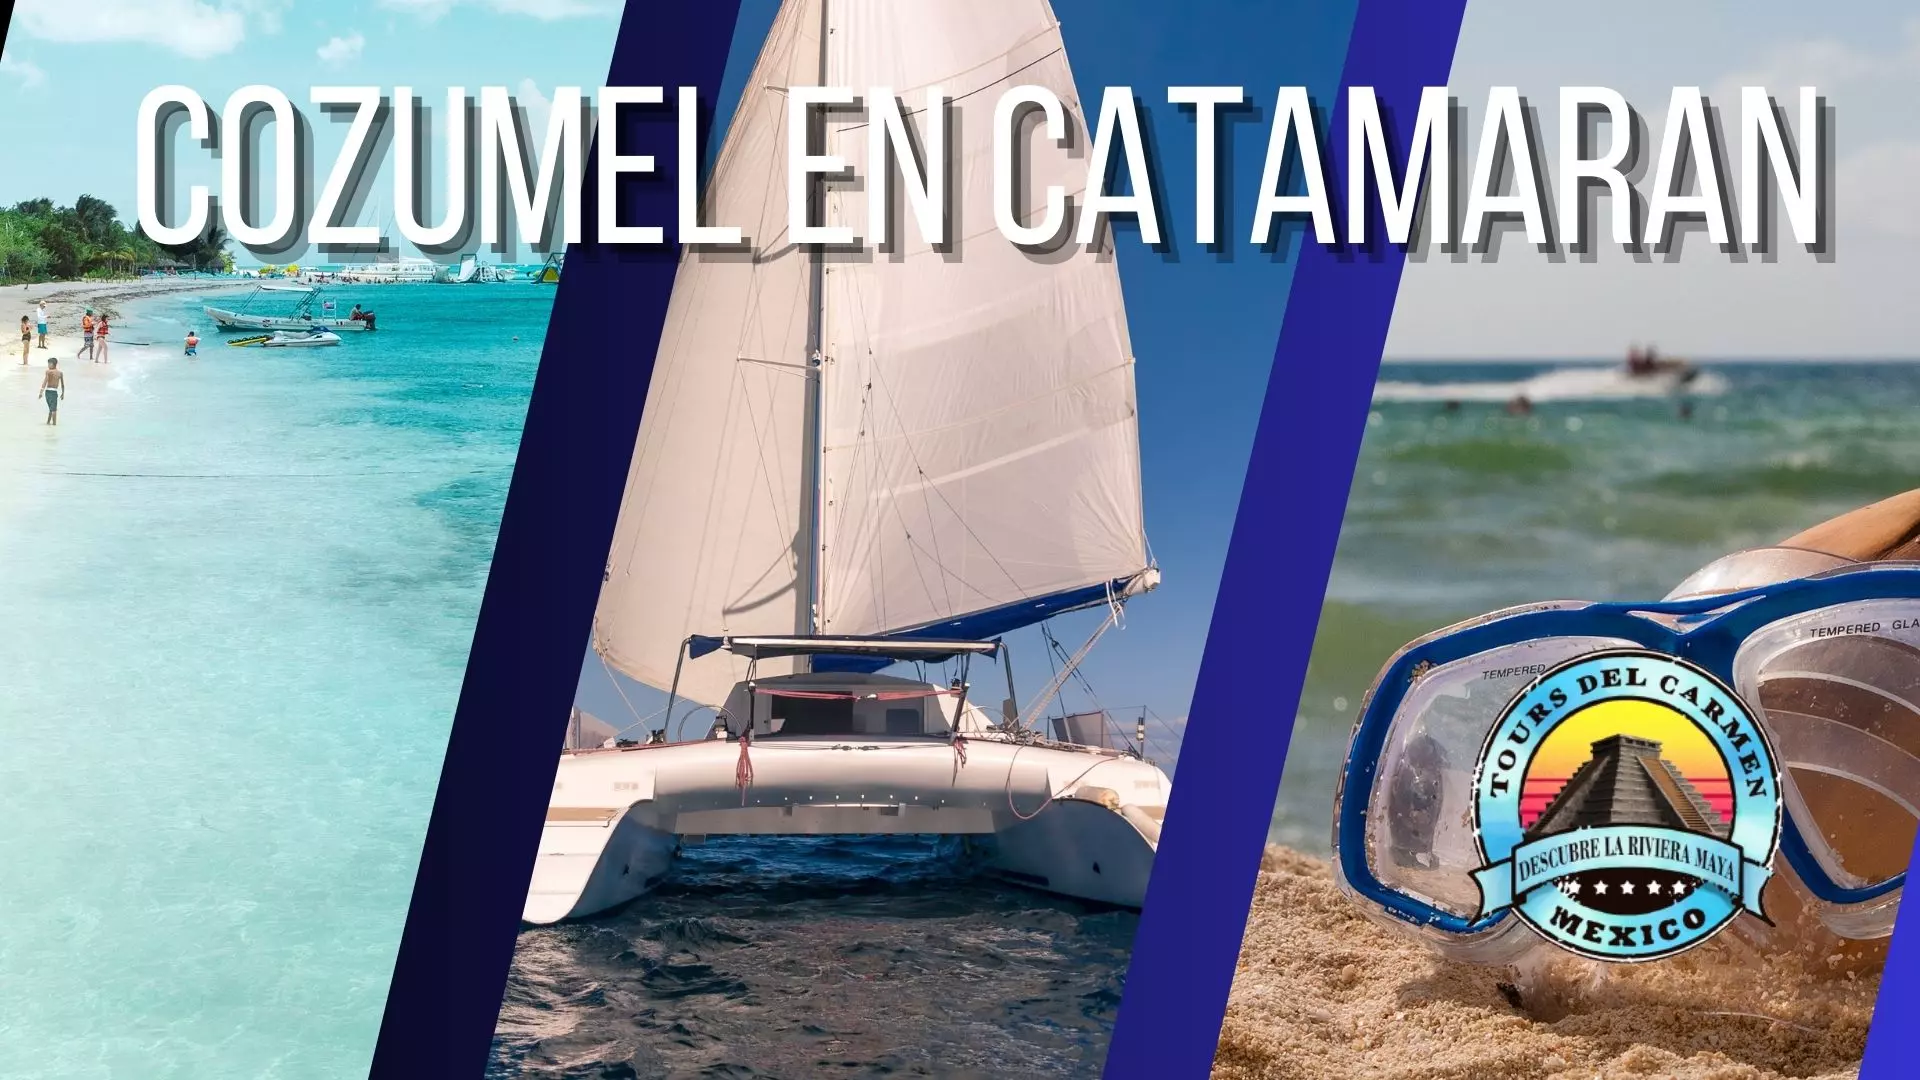 Cozumel by Catamarán Tour